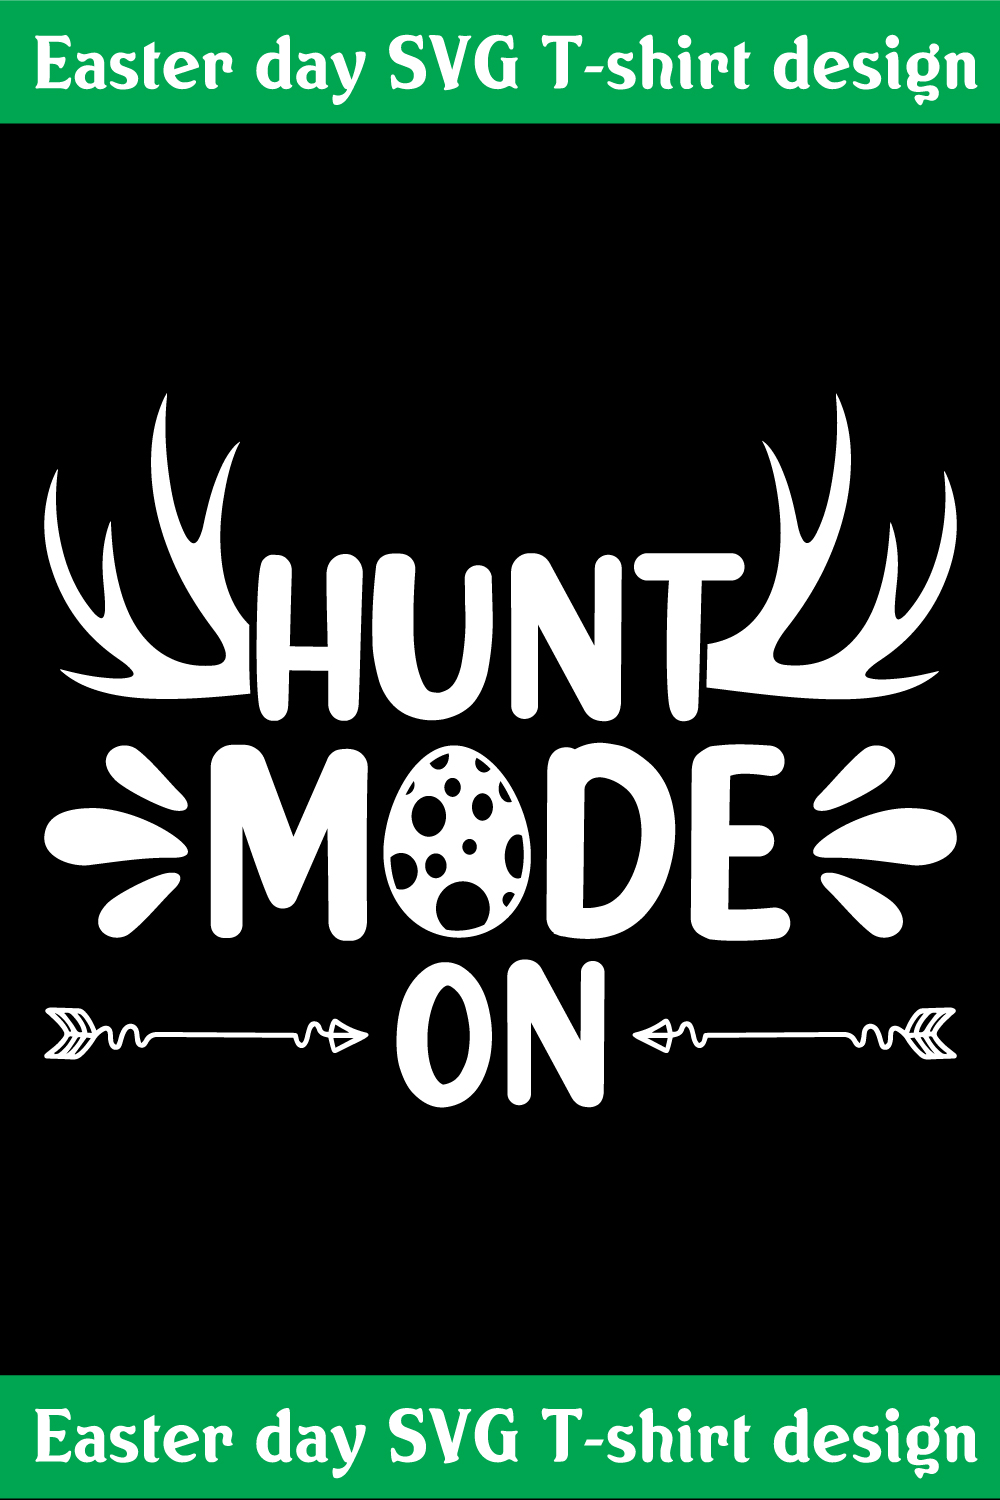 Hunt mode on SVG T-shirt design pinterest preview image.